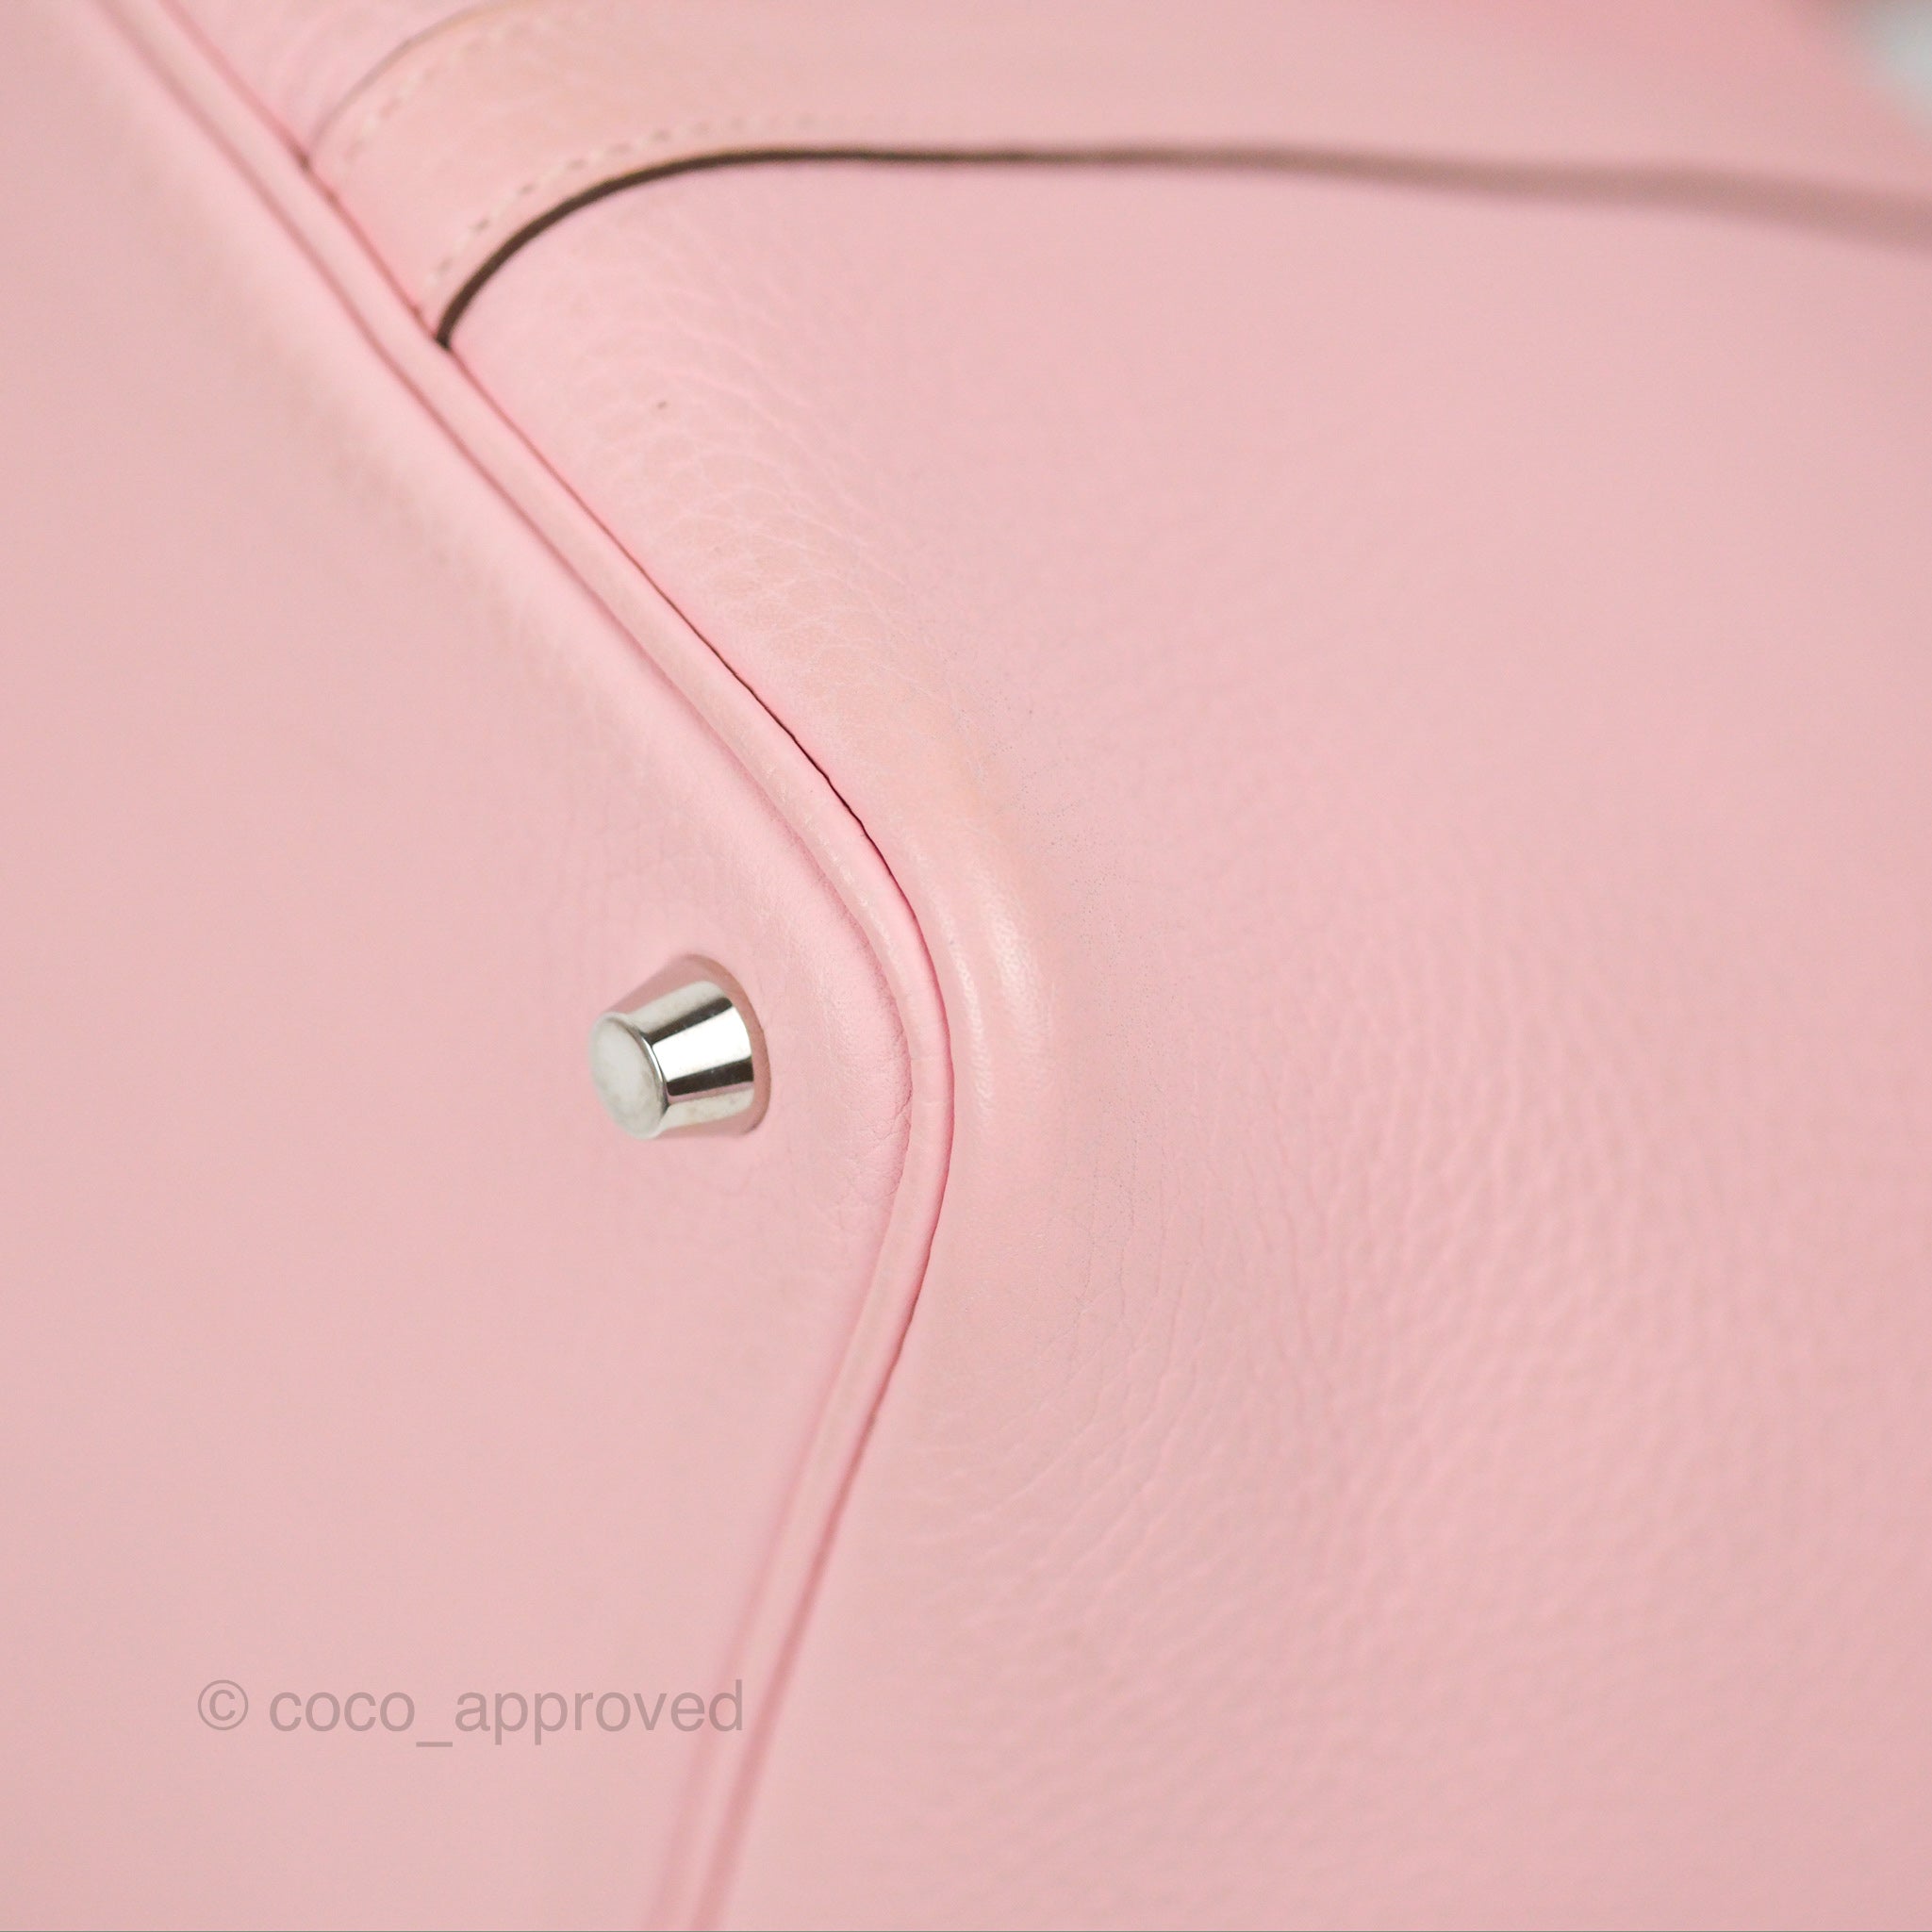 Hermès Picotin 18 Rose Sakura Clemence with Palladium Hardware